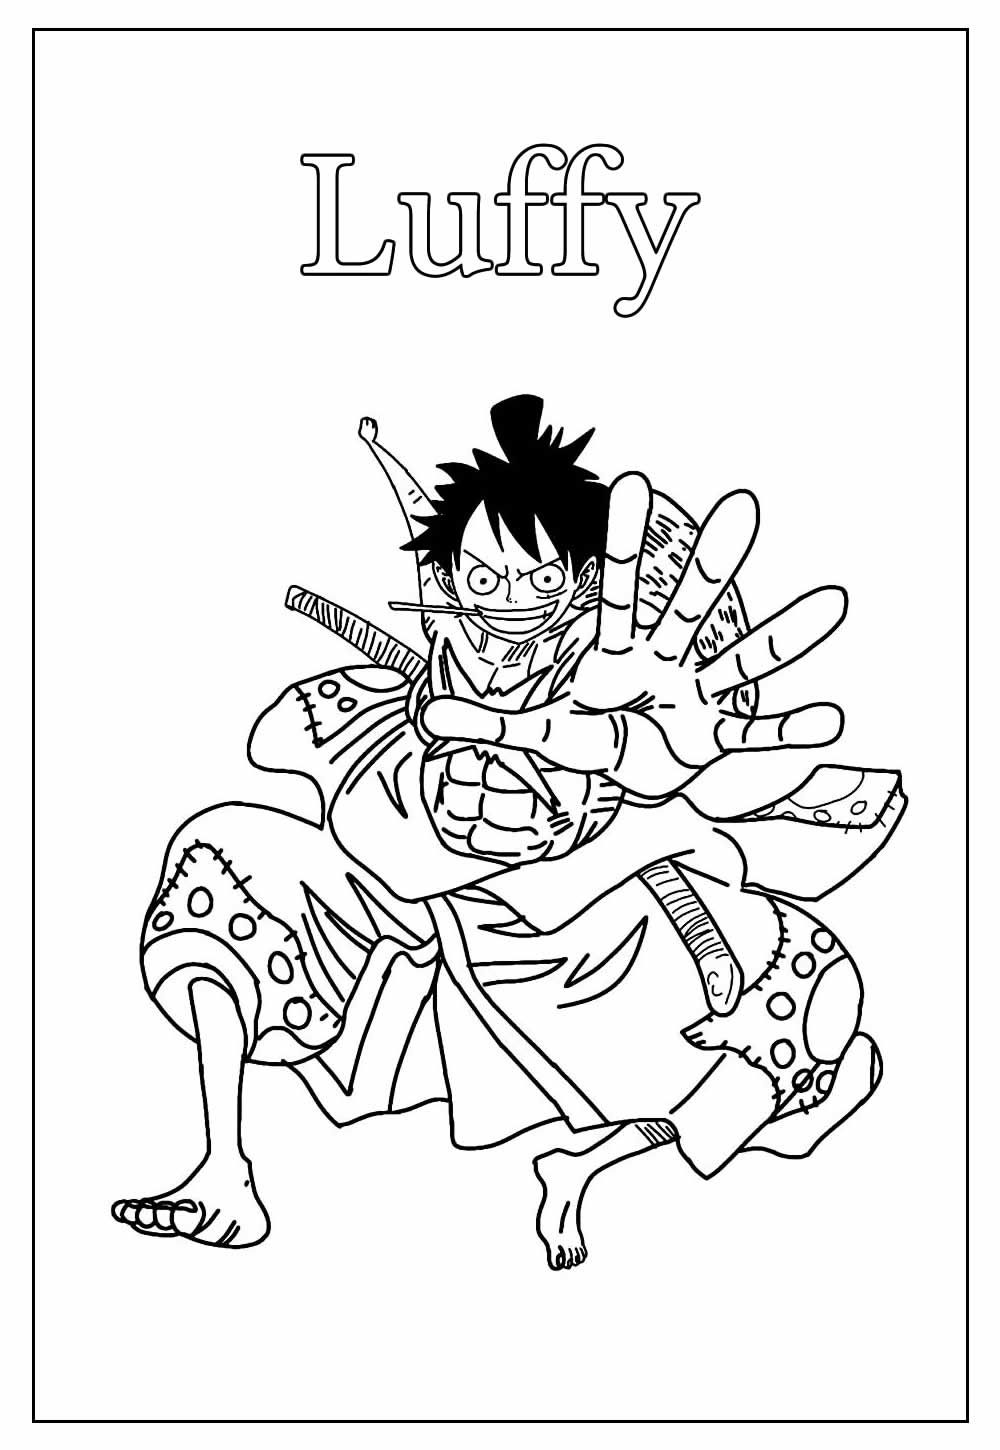 Desenho Educativo do One Piece para colorir - Luffy